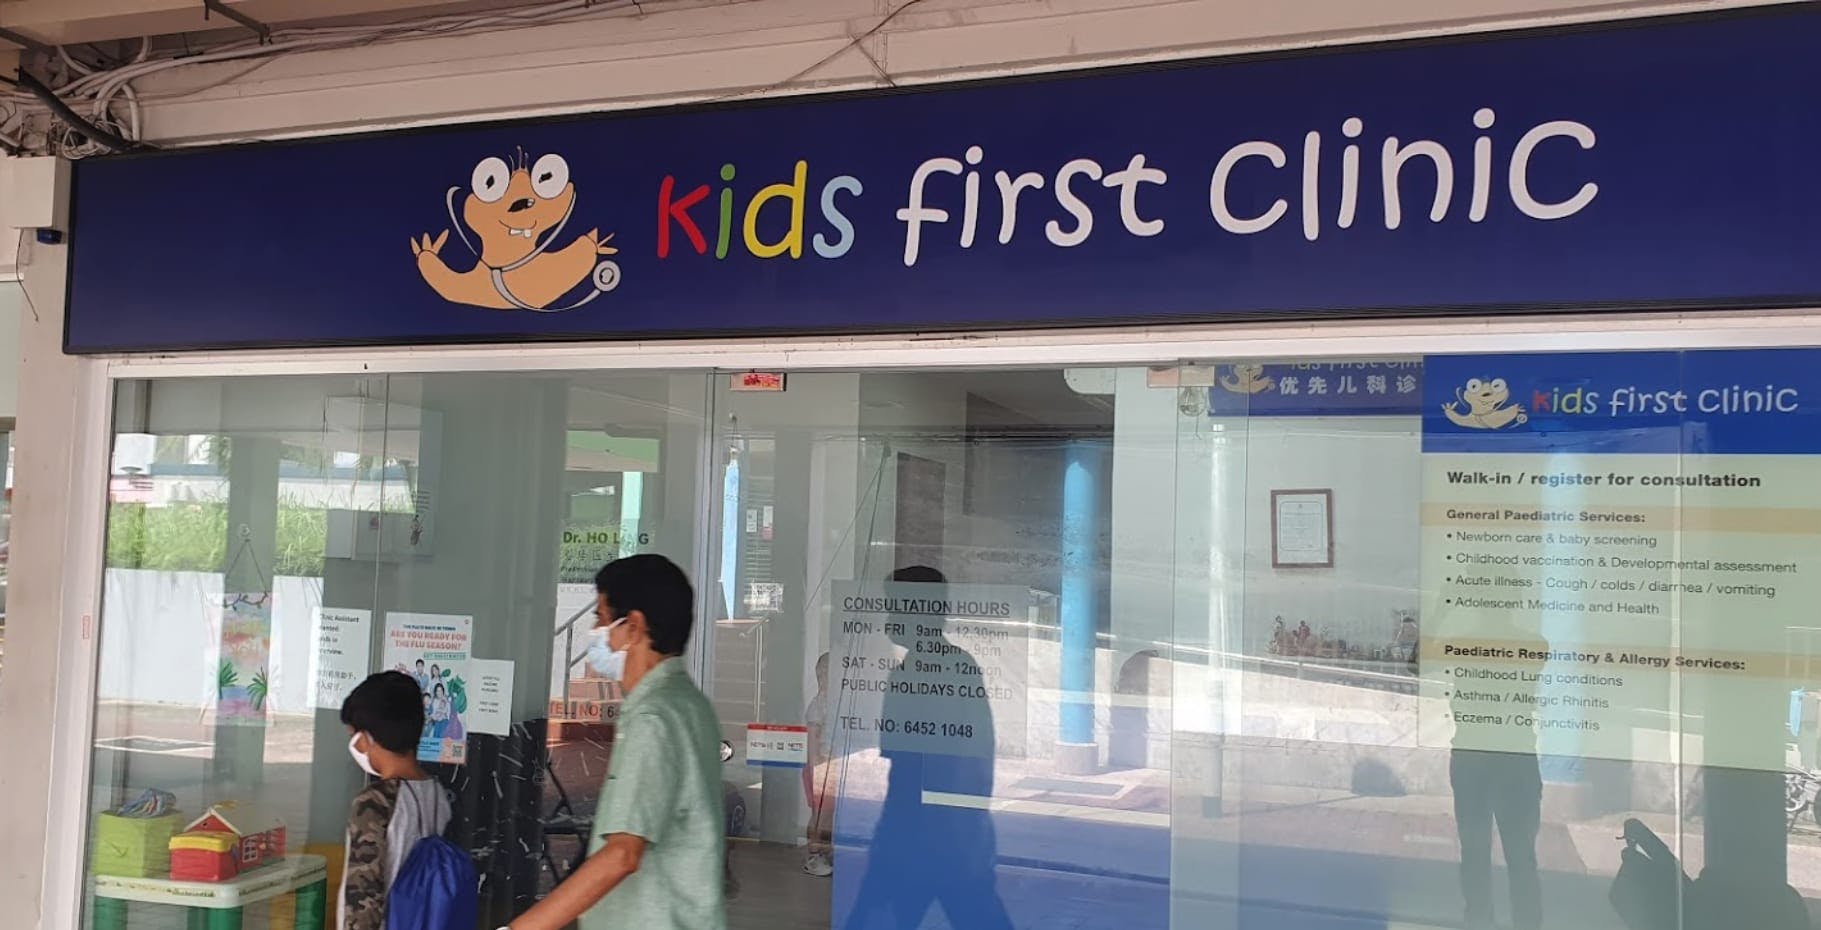 Kids First Clinic